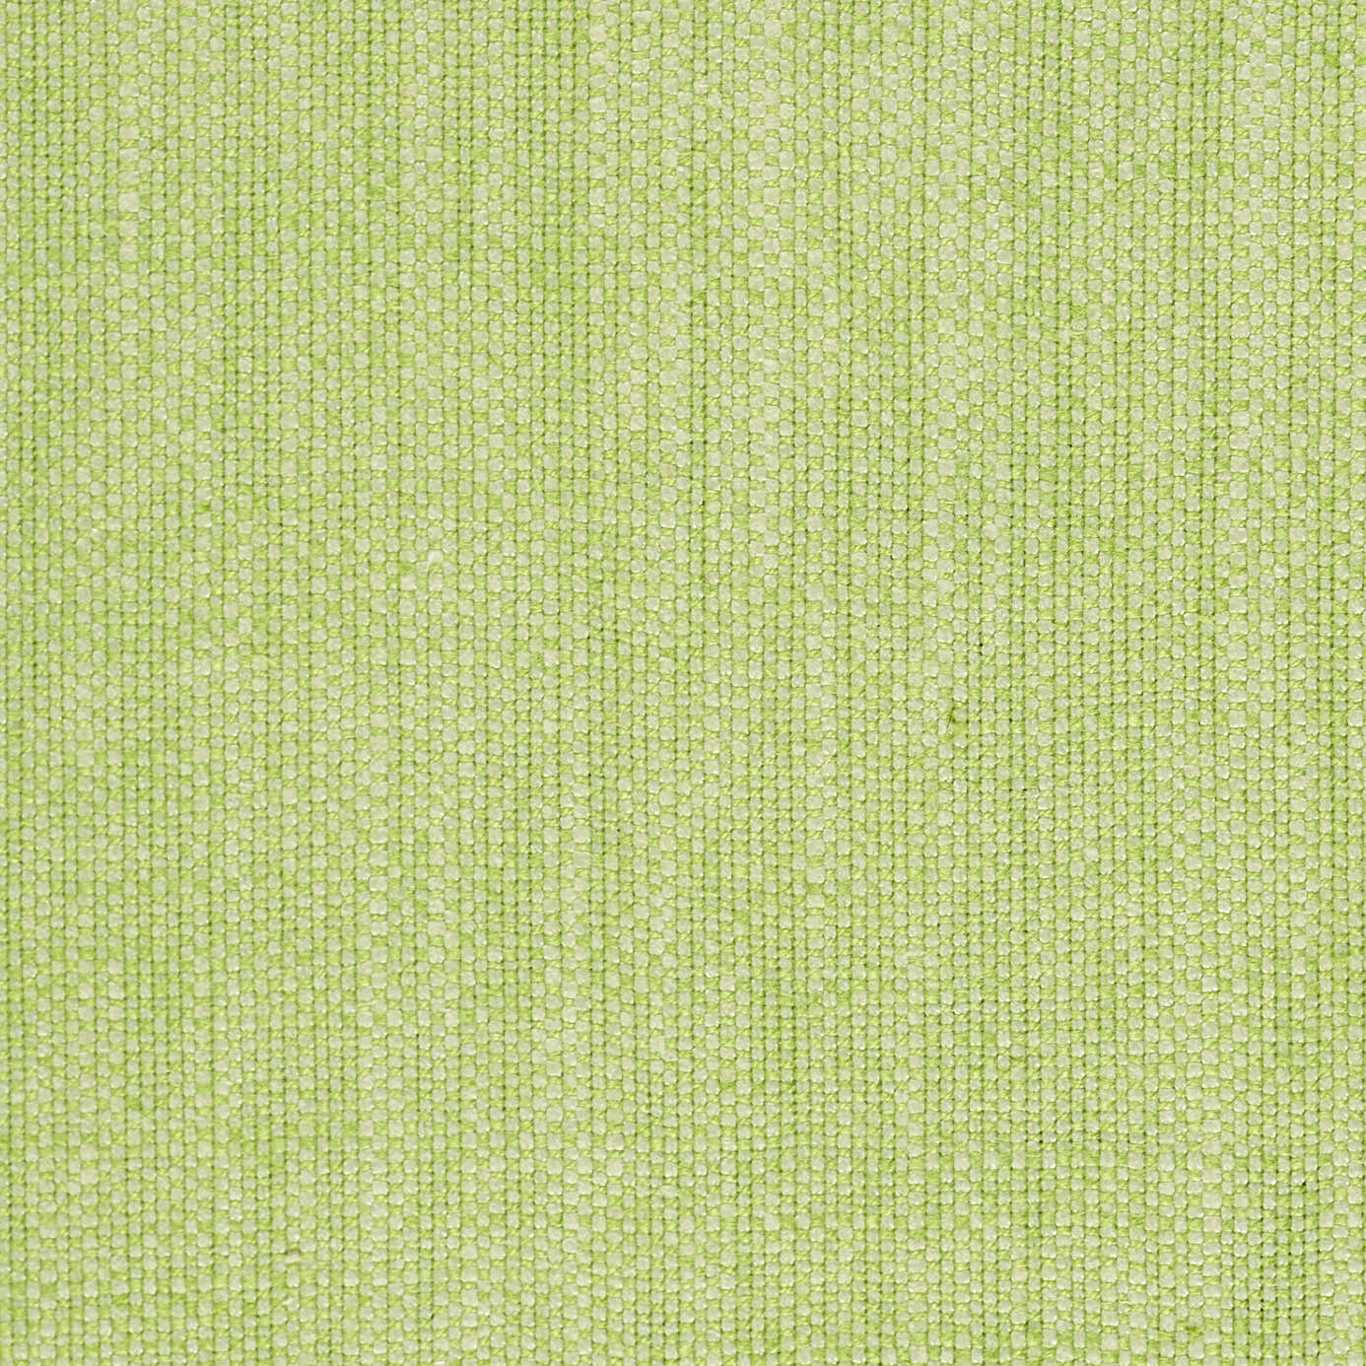 Atom Fabric by Harlequin - HTEX440039 - Peashoot